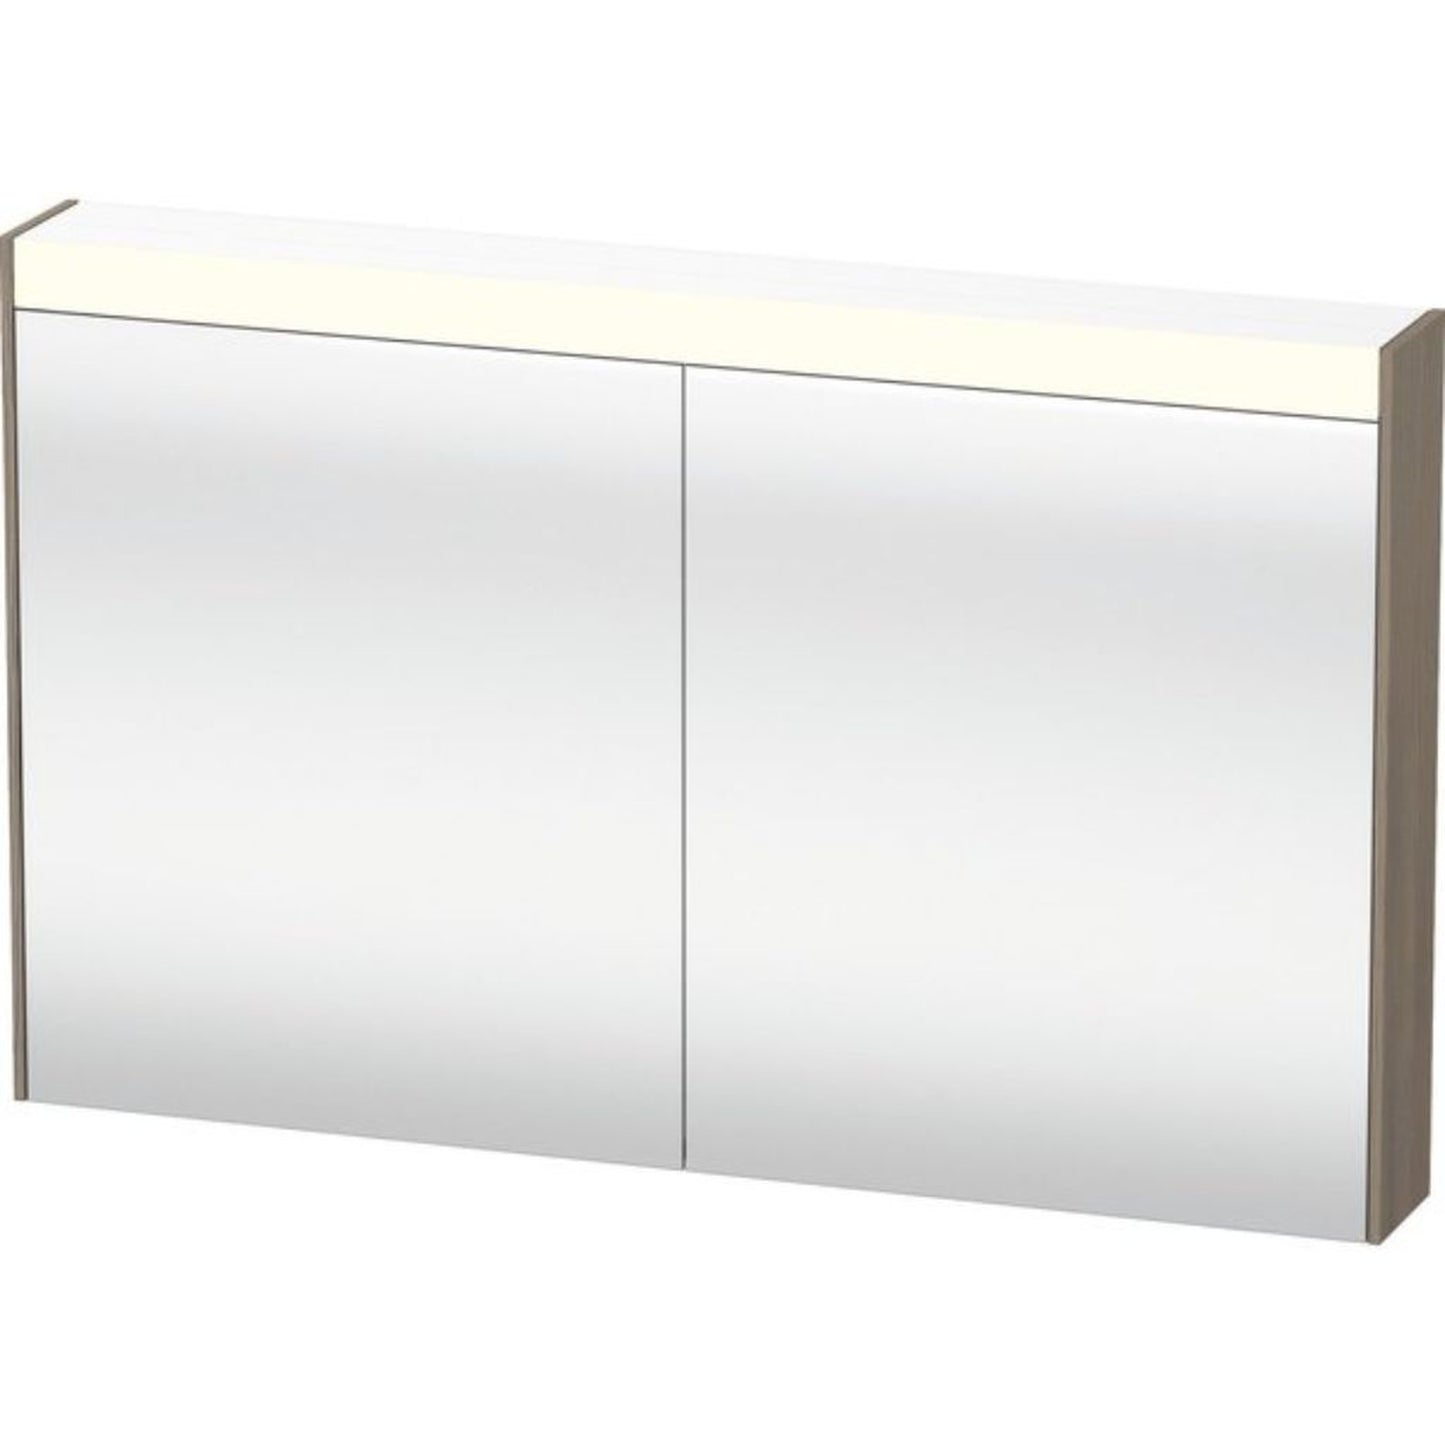 Duravit Brioso 48" x 30" x 6" Mirror Cabinet With Lighting Oak Terra